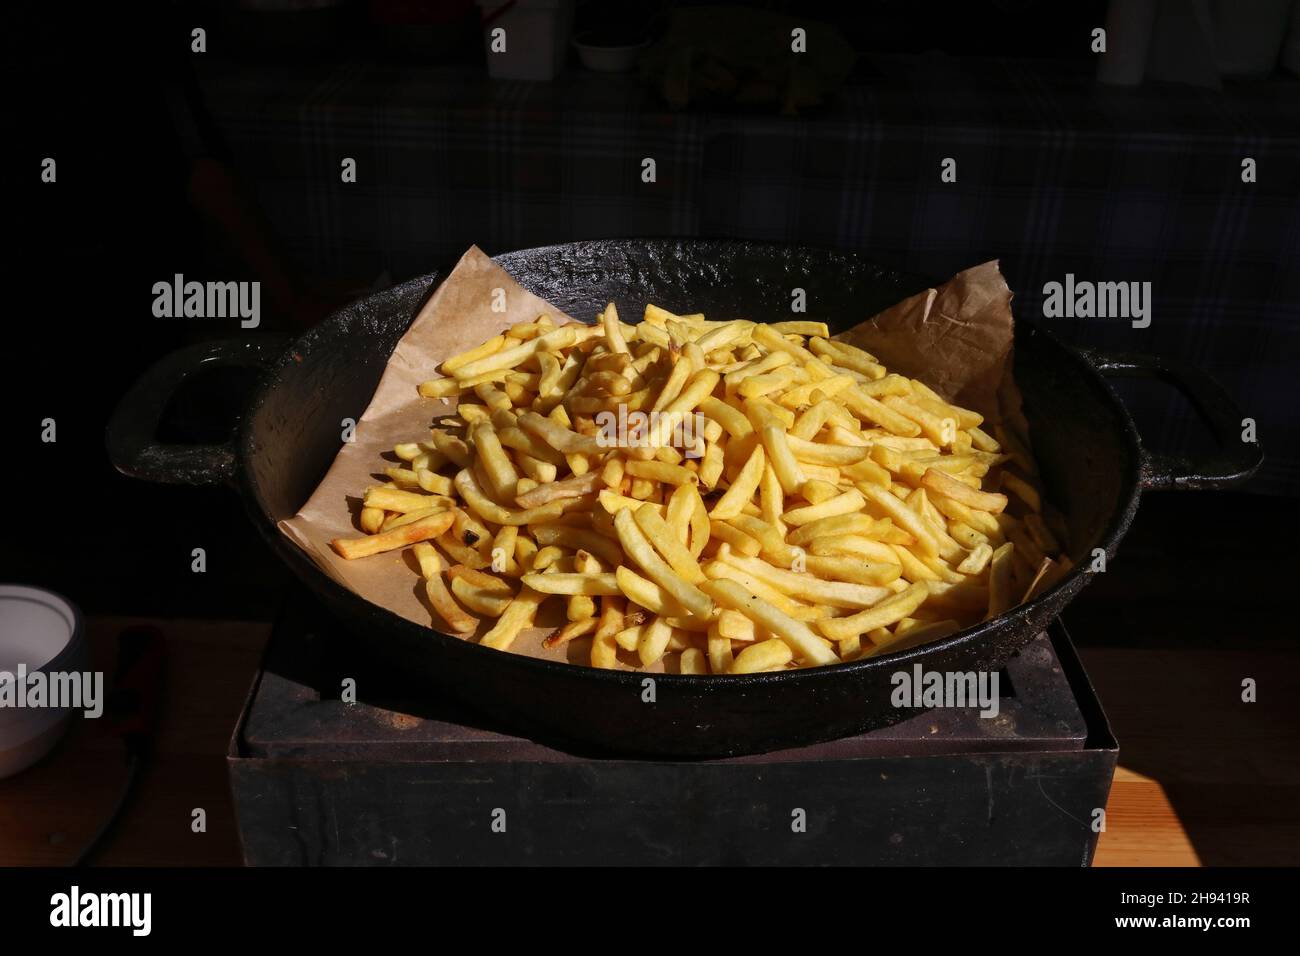 Auf einer schwarzen Bratpfanne liegt ein Haufen gebratener Kartoffeln Stockfoto